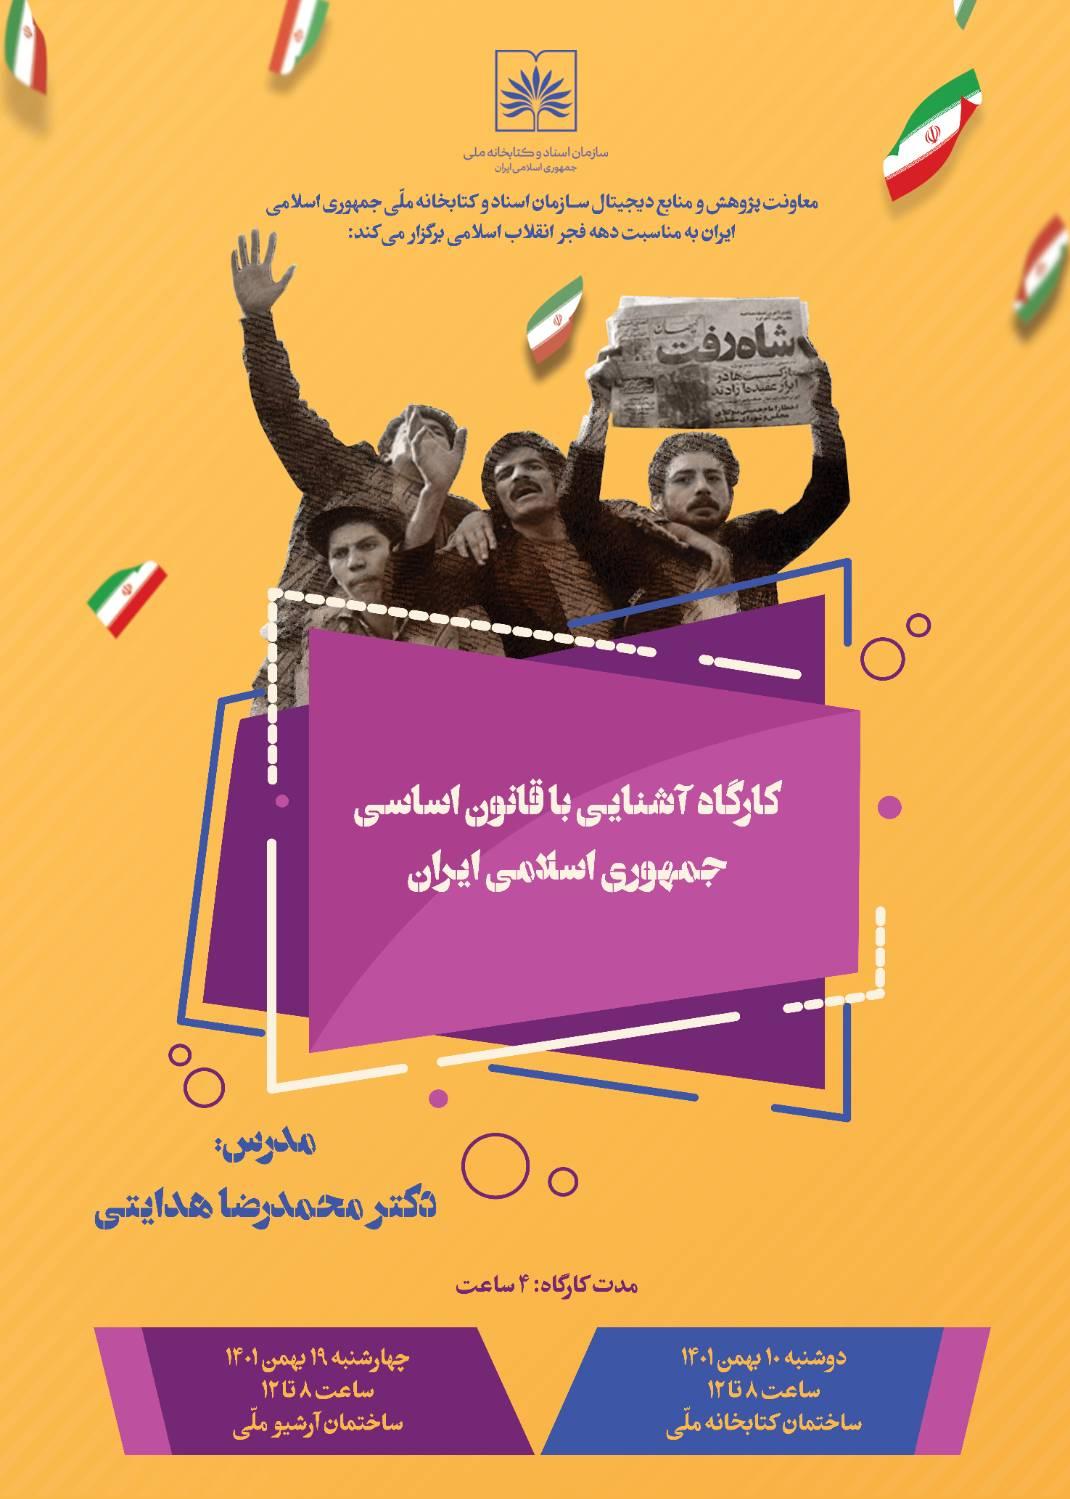 کارگاه دو روزه آشنایی با قانون اساسی جمهوری اسلامی ایران برگزار شد